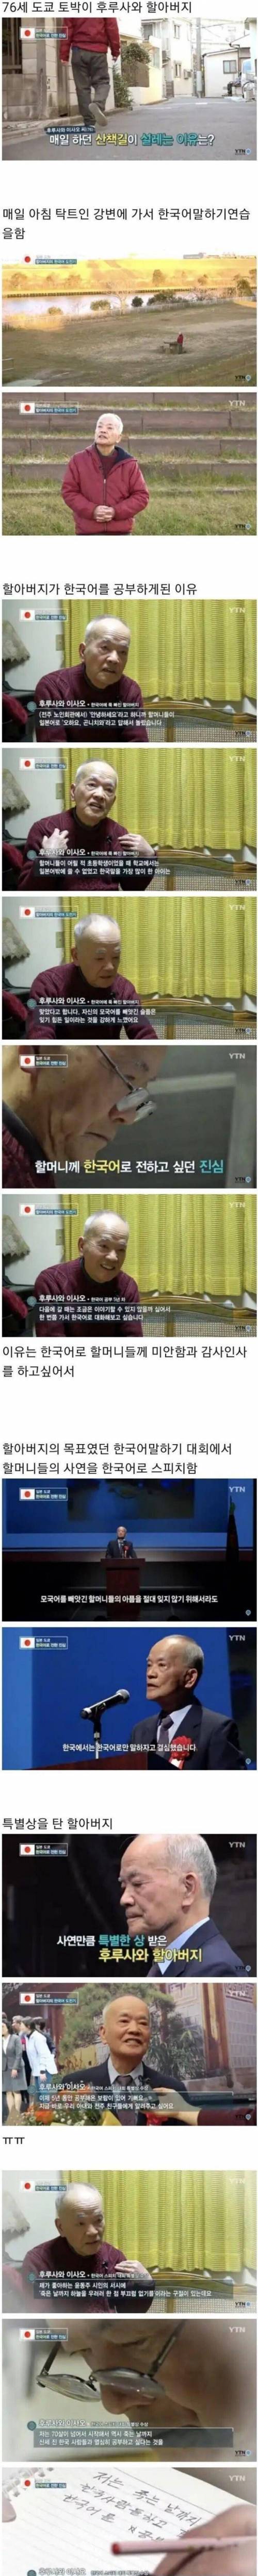 3 76세 일본 할아버지가 한국어를 배우는 이유.jpg